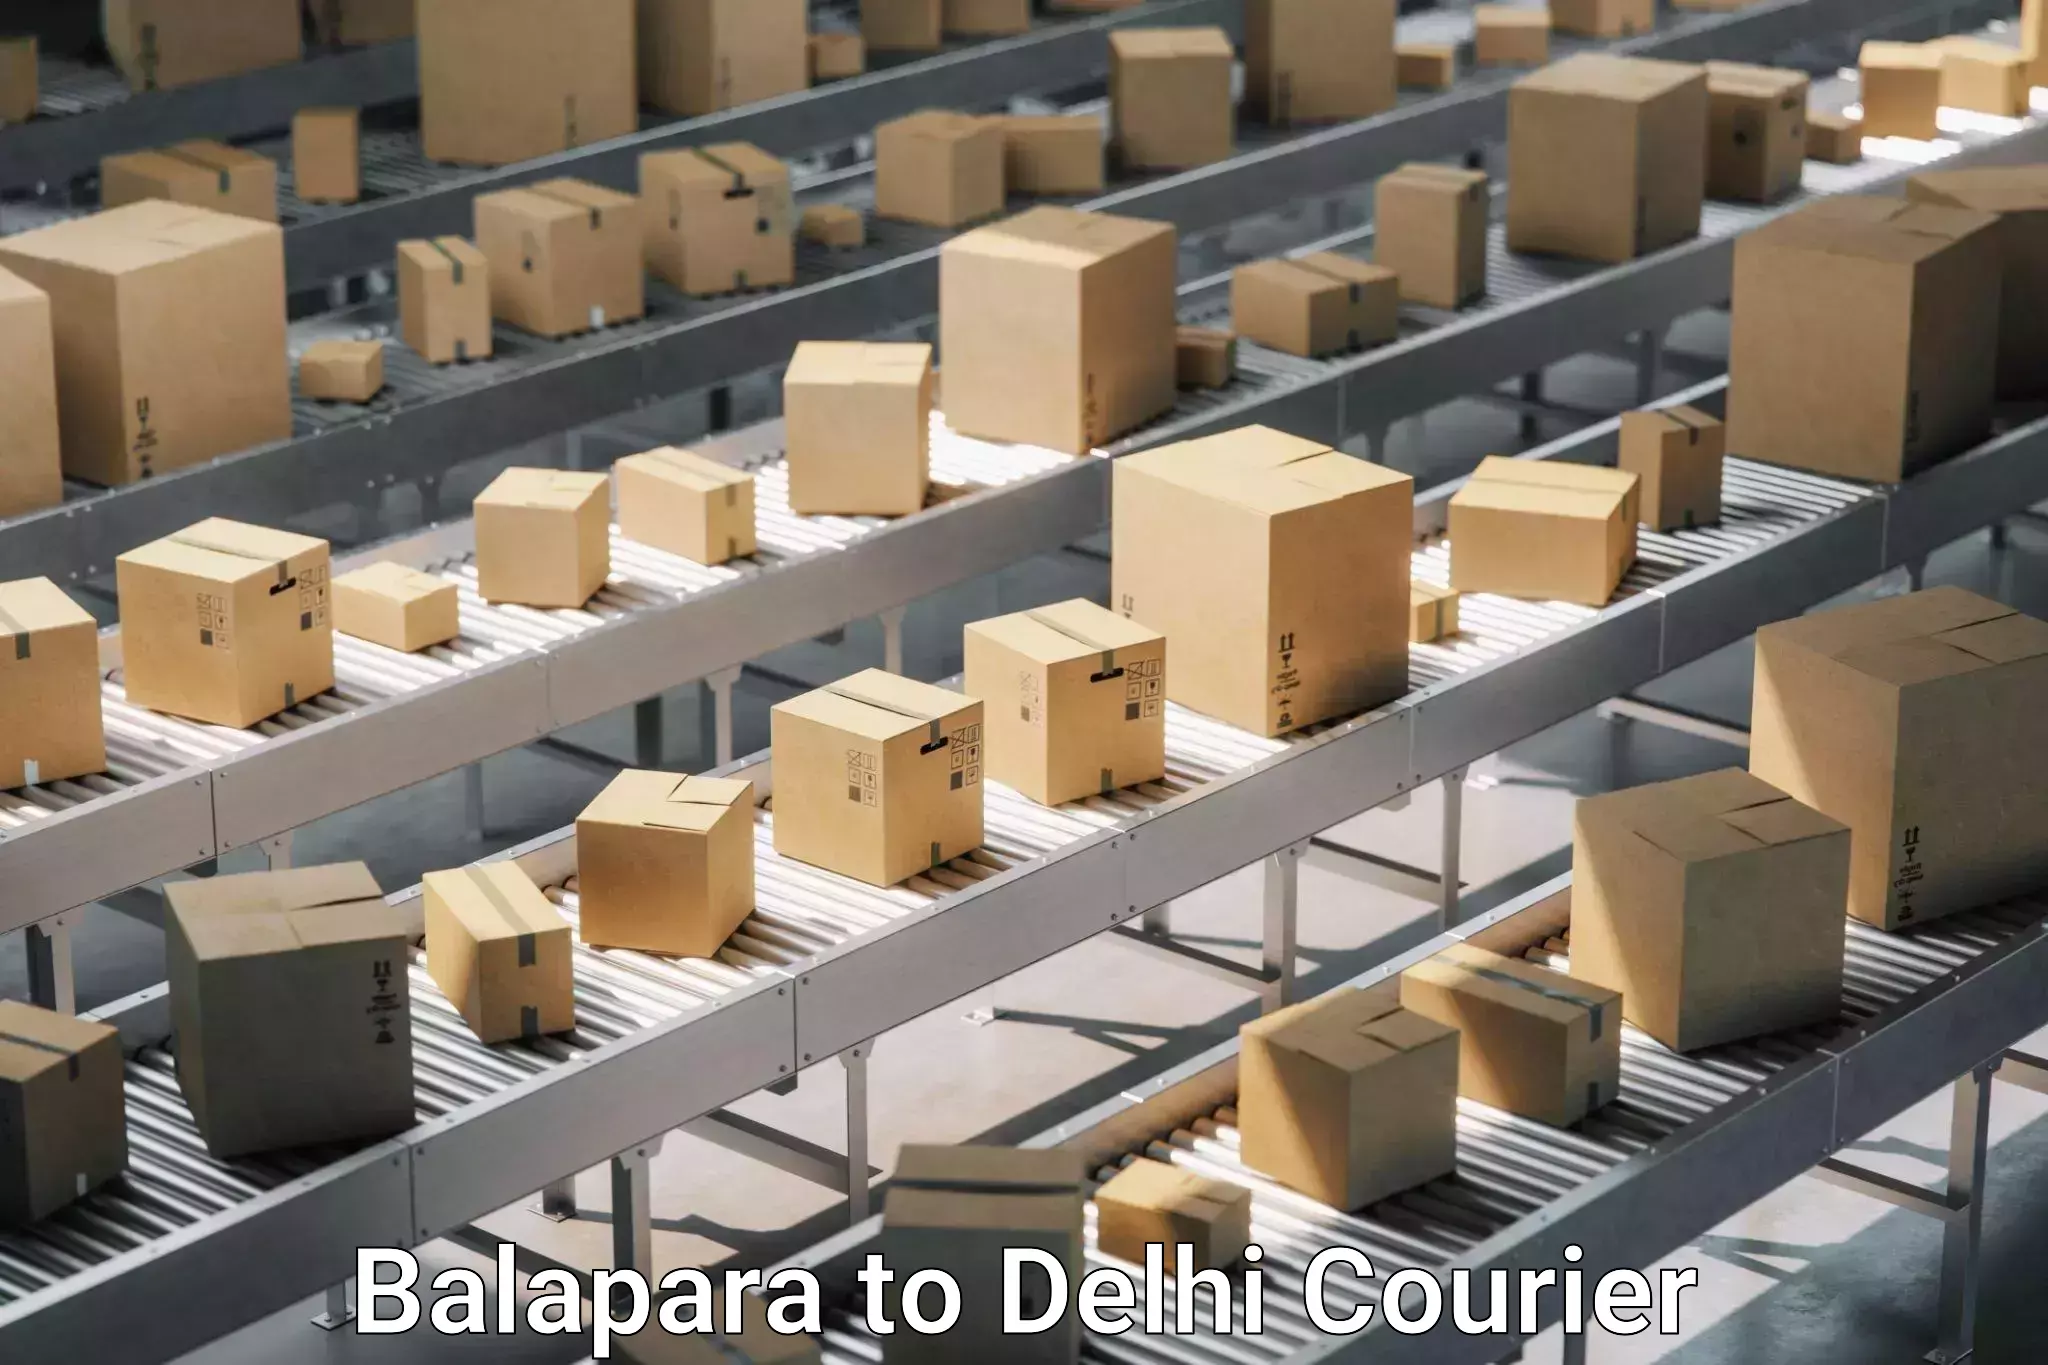 Quality relocation services Balapara to Delhi